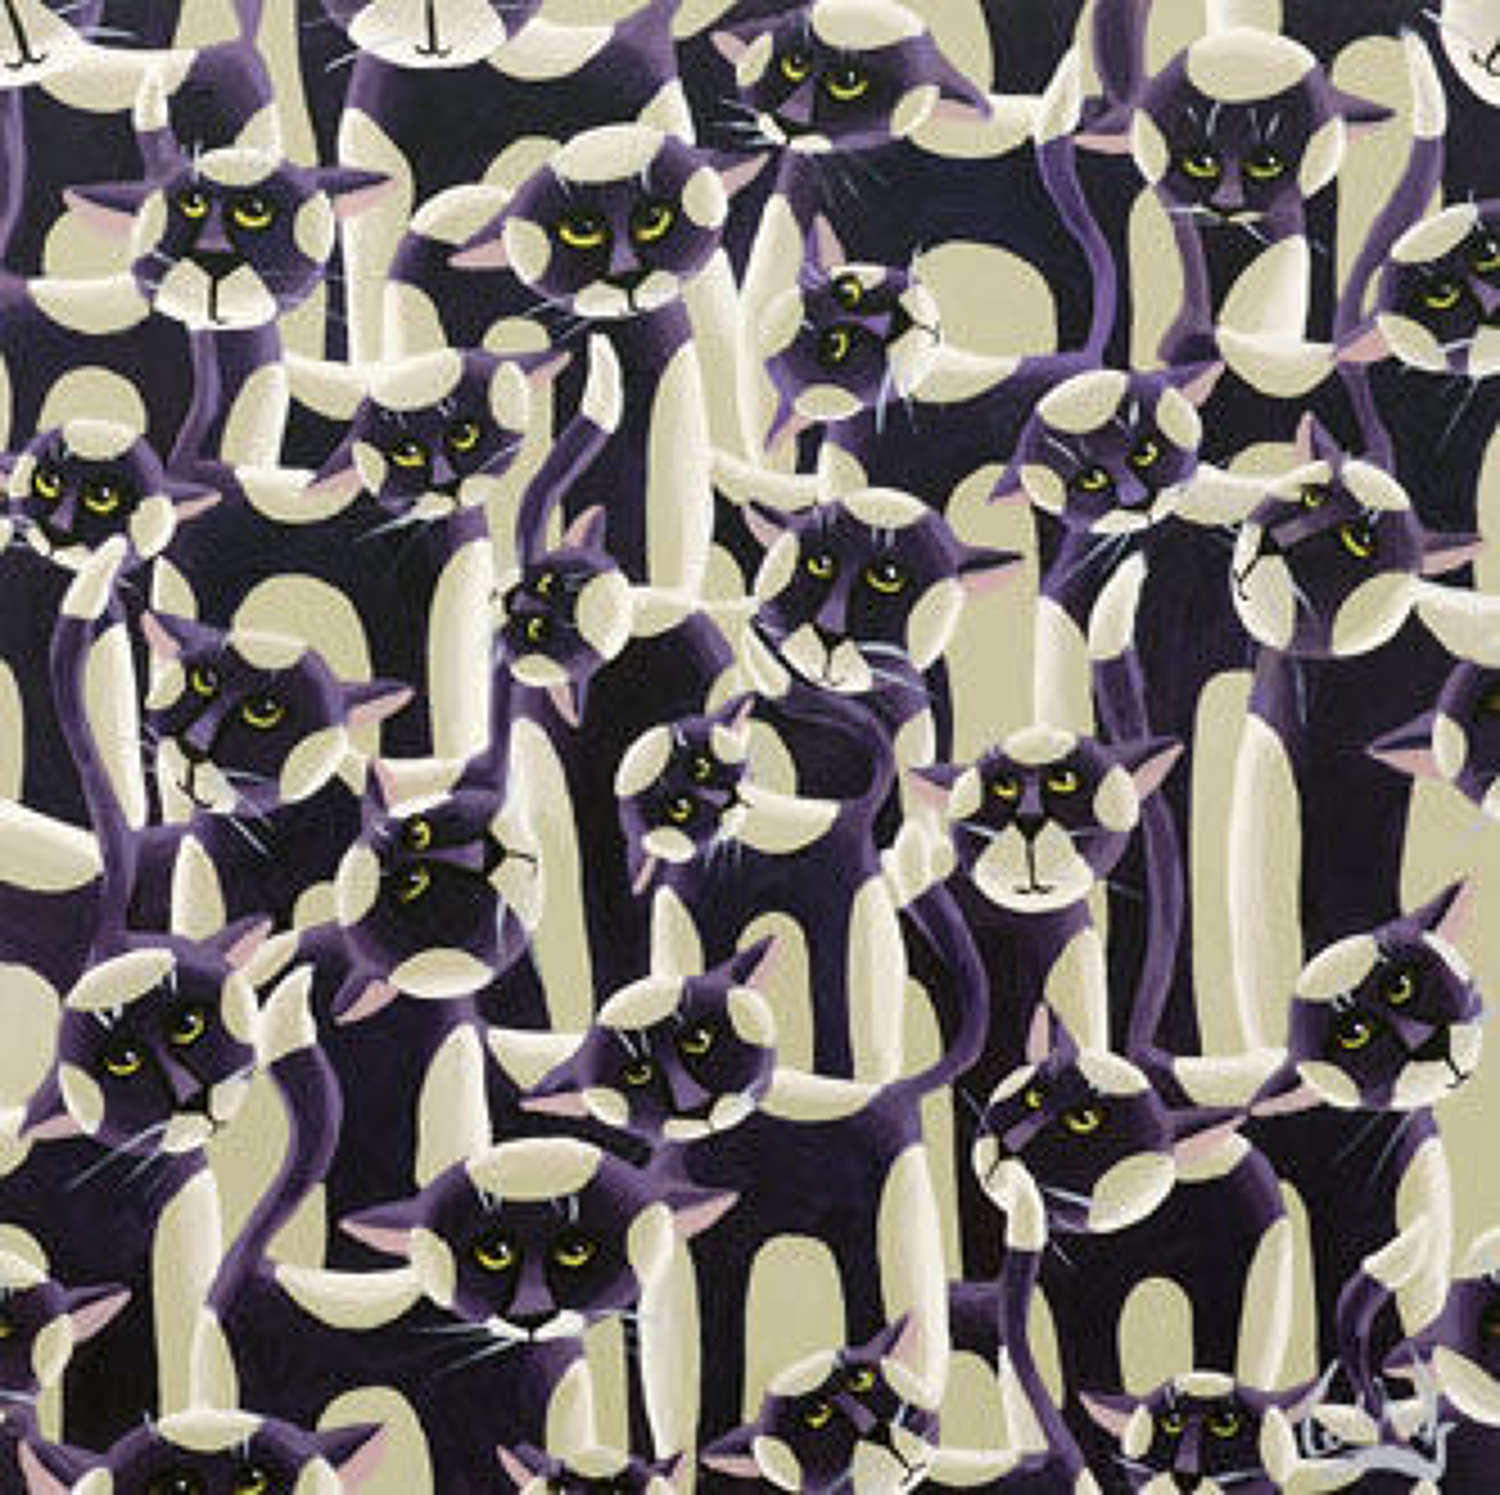 'Many Purple Cats'